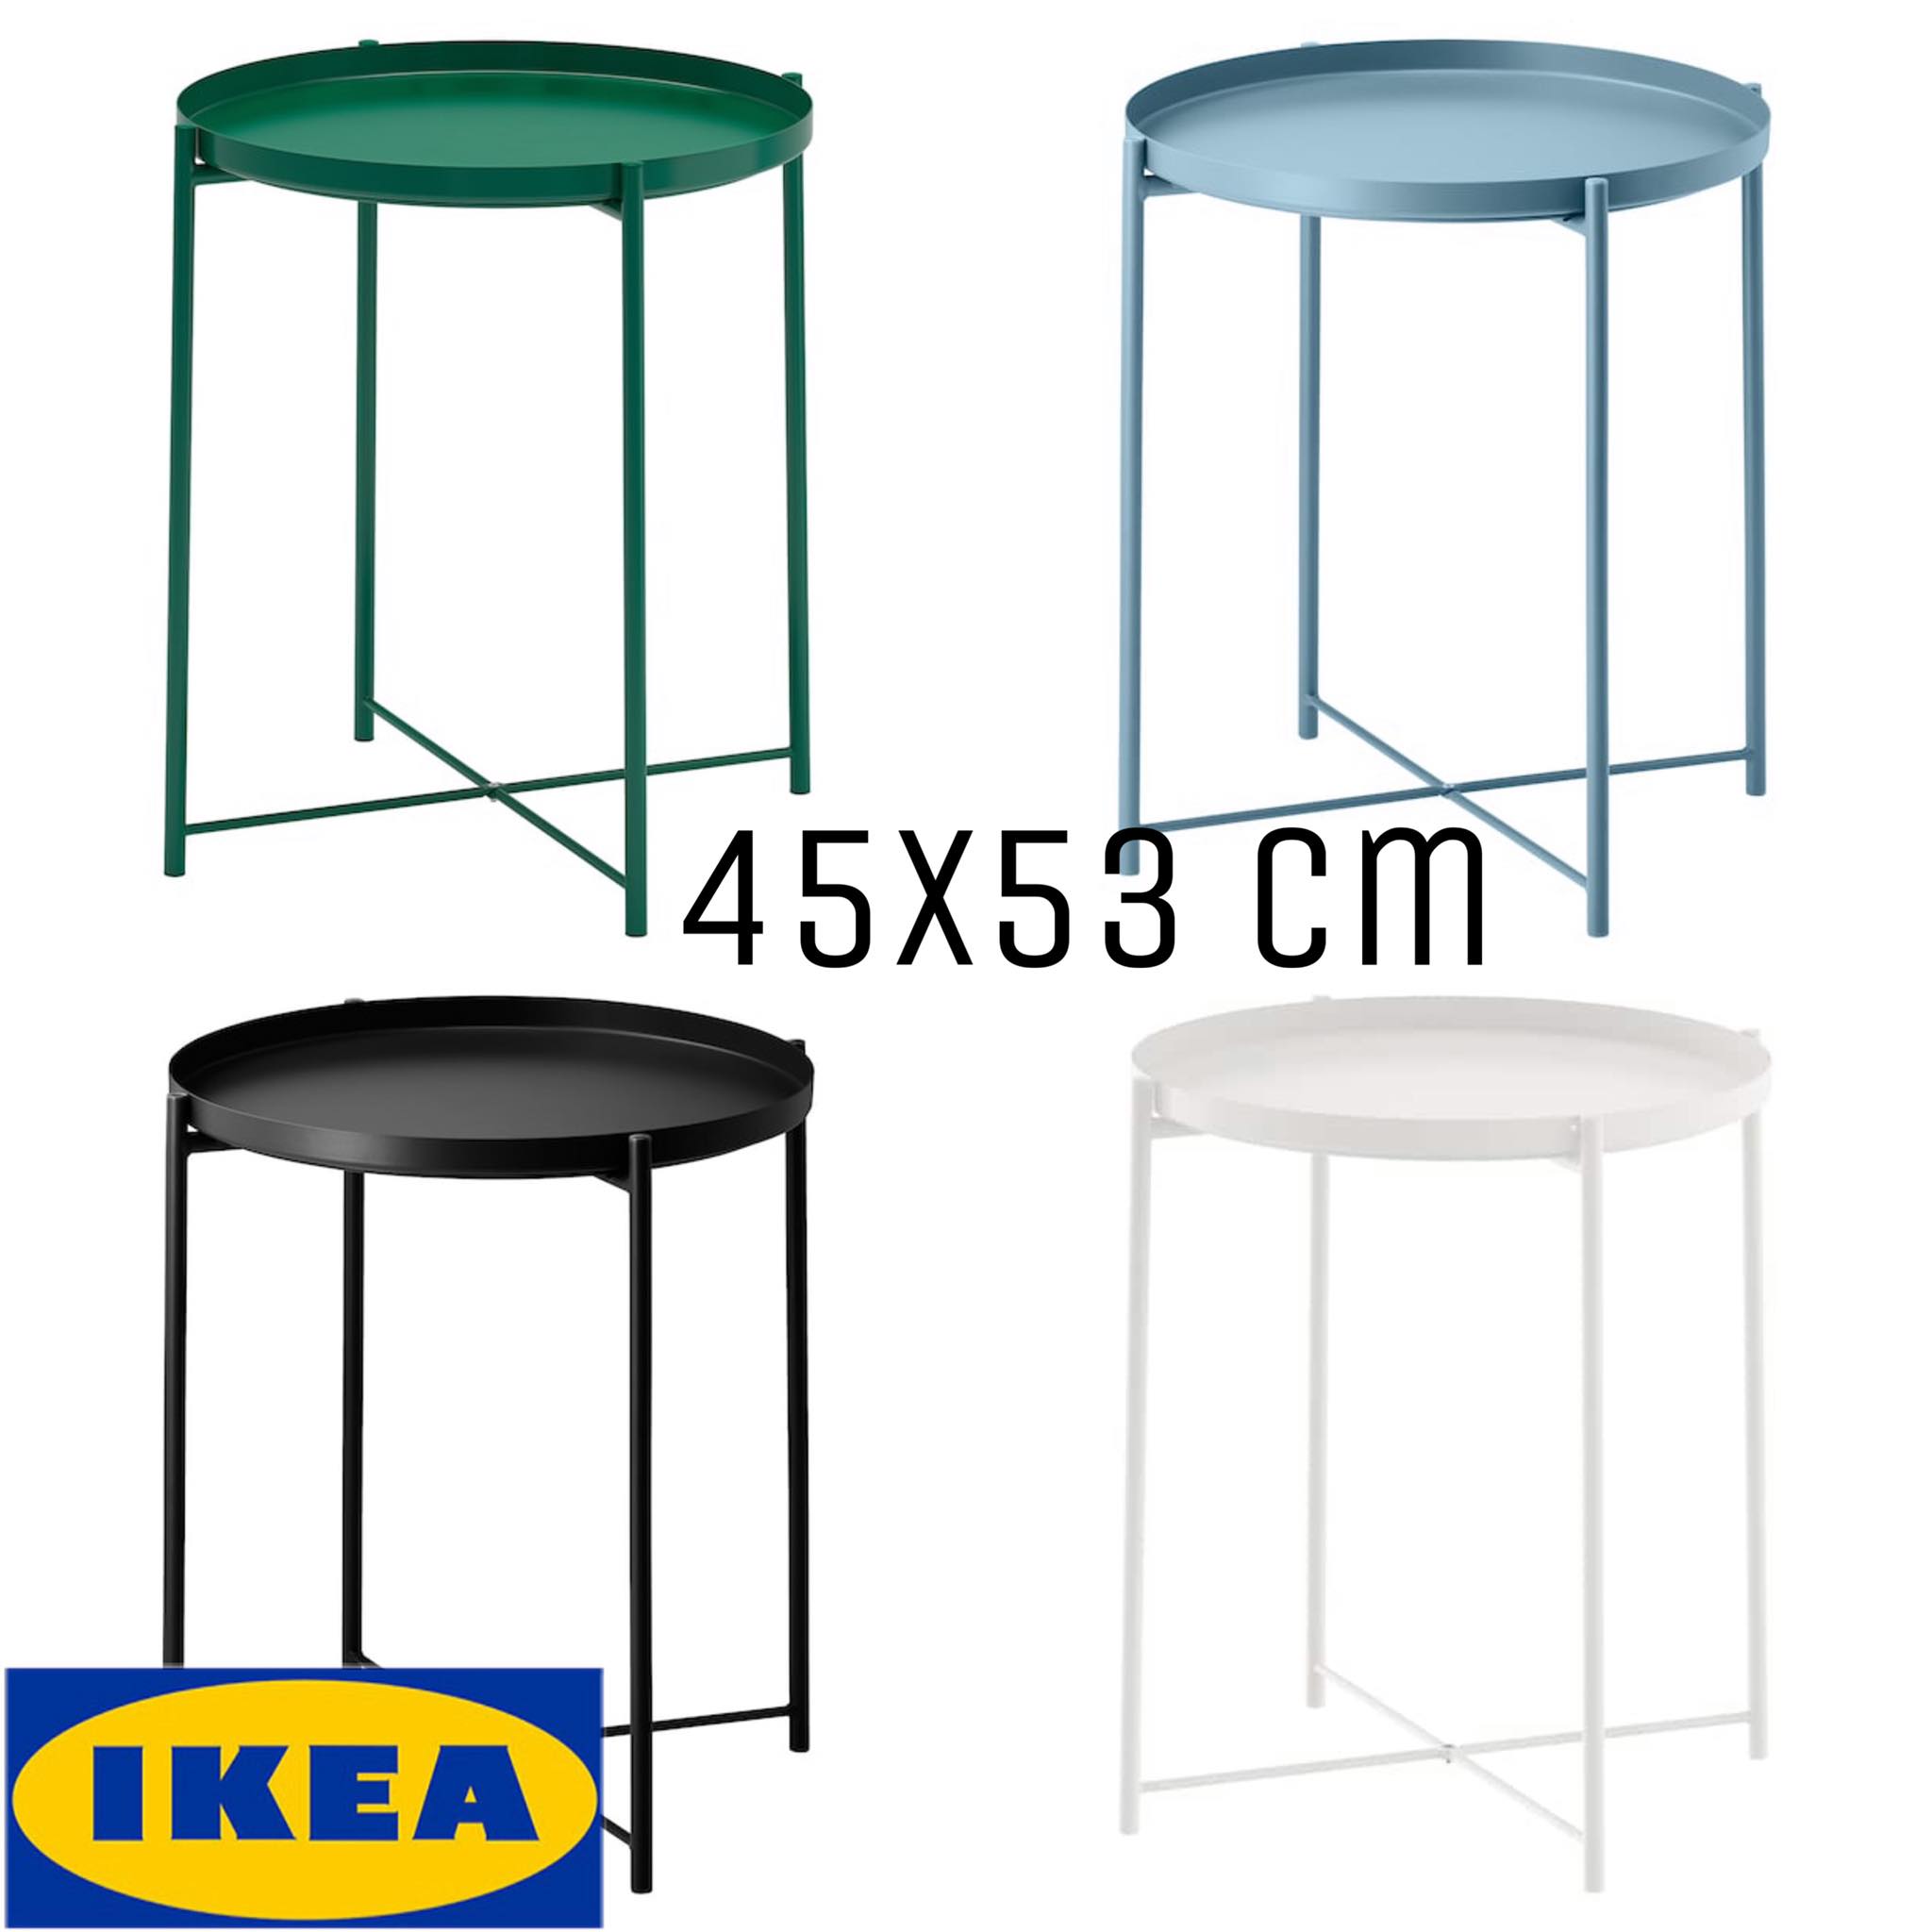 พร้อมส่ง!! IKEA ของแท้ GLADOM กลาดุม โต๊ะวางถาด (ยกถาดออกได้), ขาว,ดำ,น้ำเงิน,เขียว 45x53 ซม.